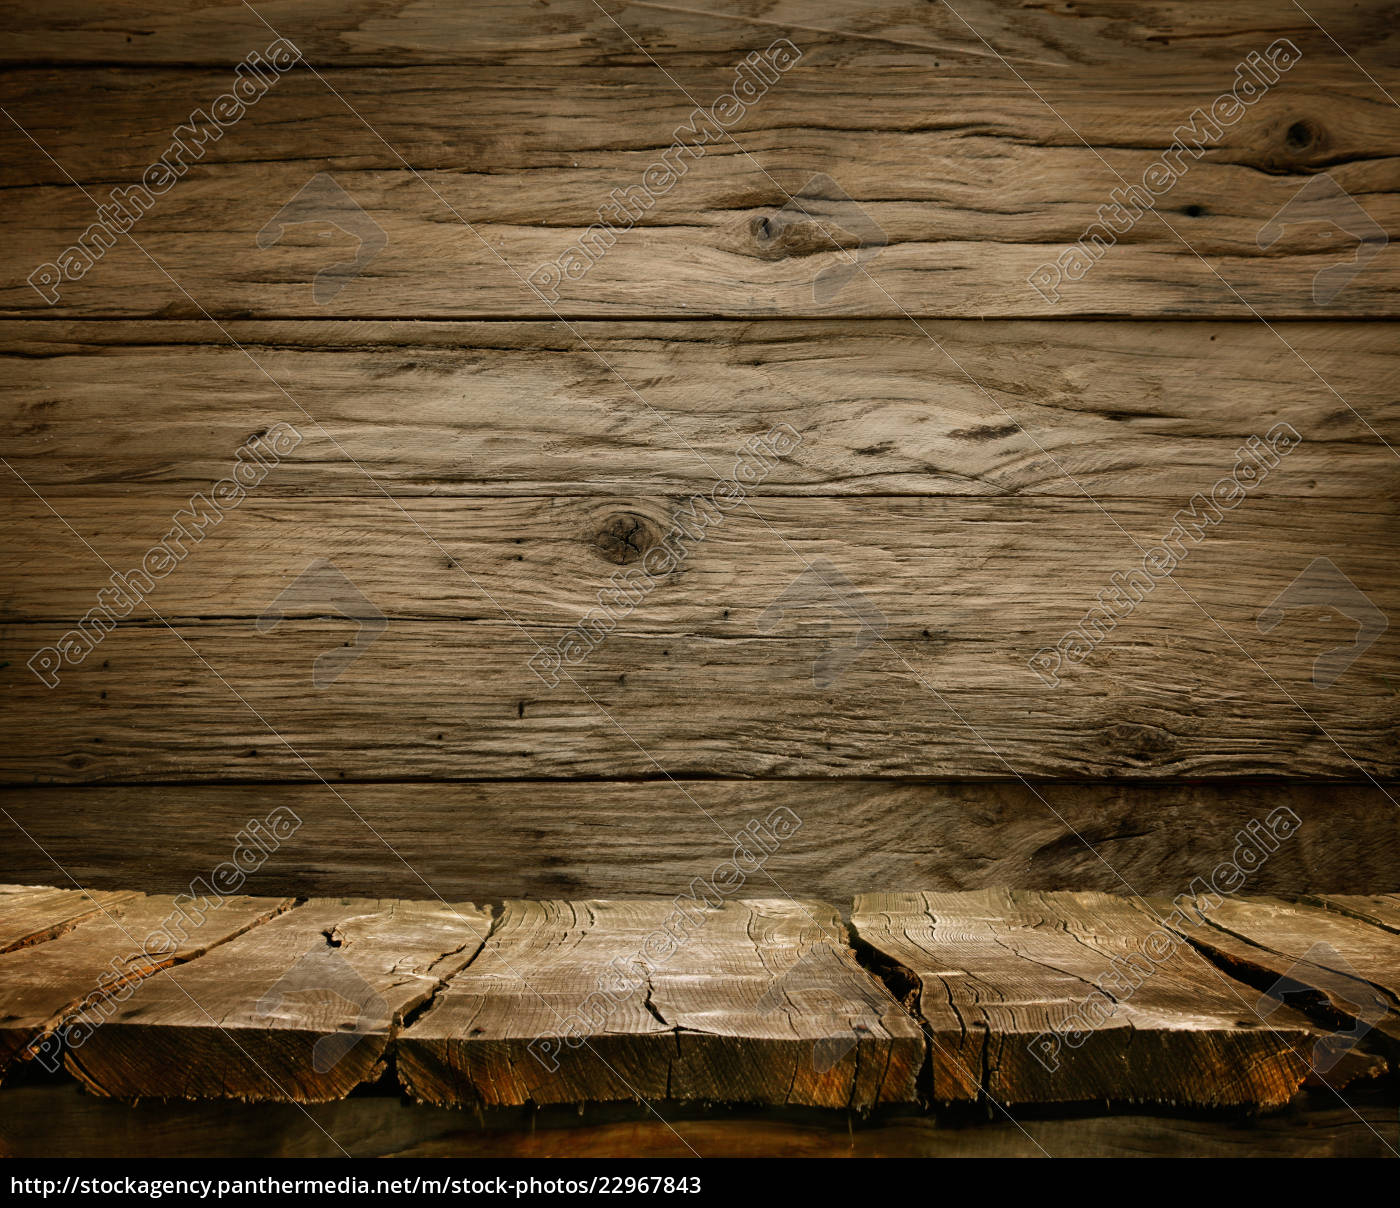 Sfondo in legno - tavolo con parete in legno - Foto stock #22967843